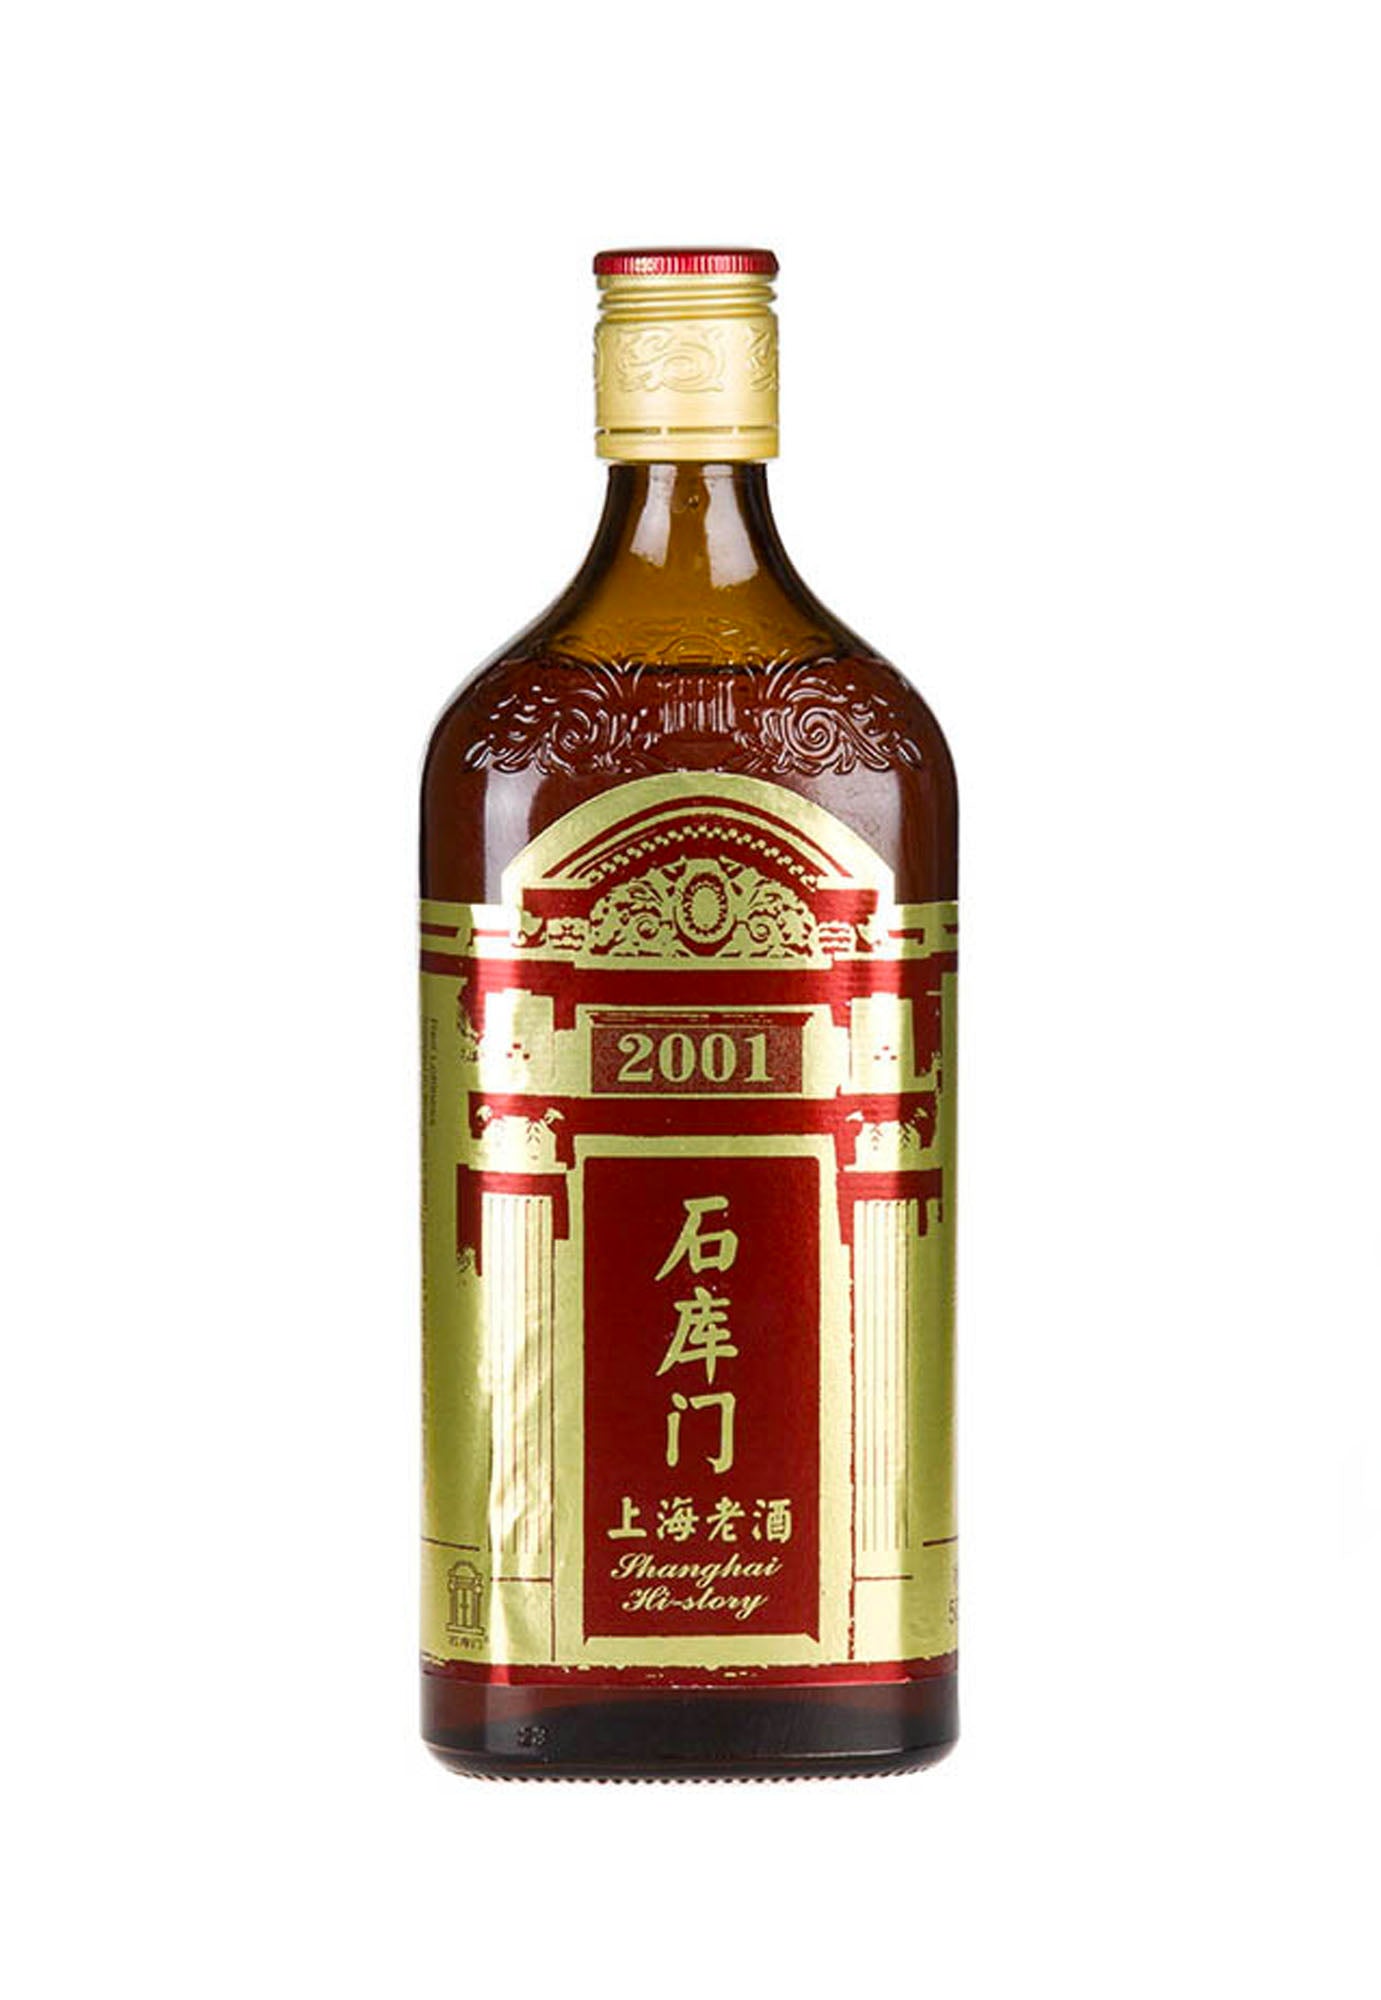 Shikumen Shanghai Huang Jiu Red 2001 - 500 ml